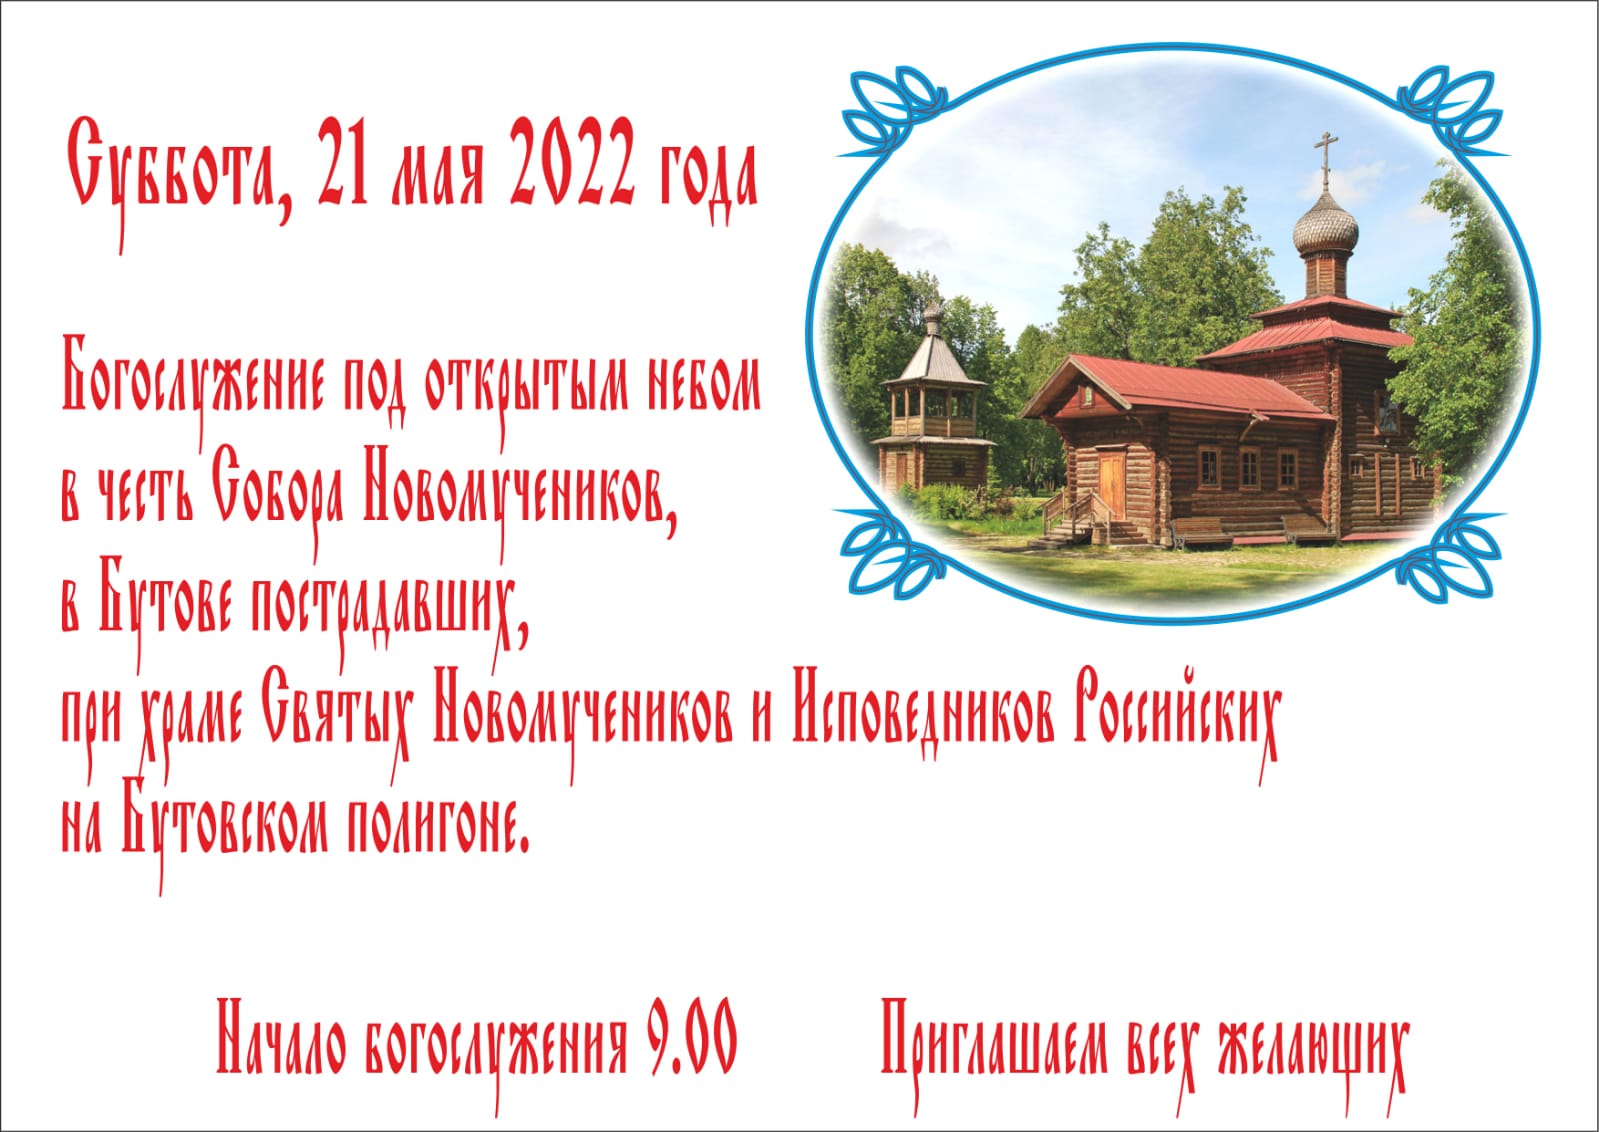 4 мая православный праздник. Новомученики в Бутове пострадавших. День памяти Бутовских новомучеников в храме.